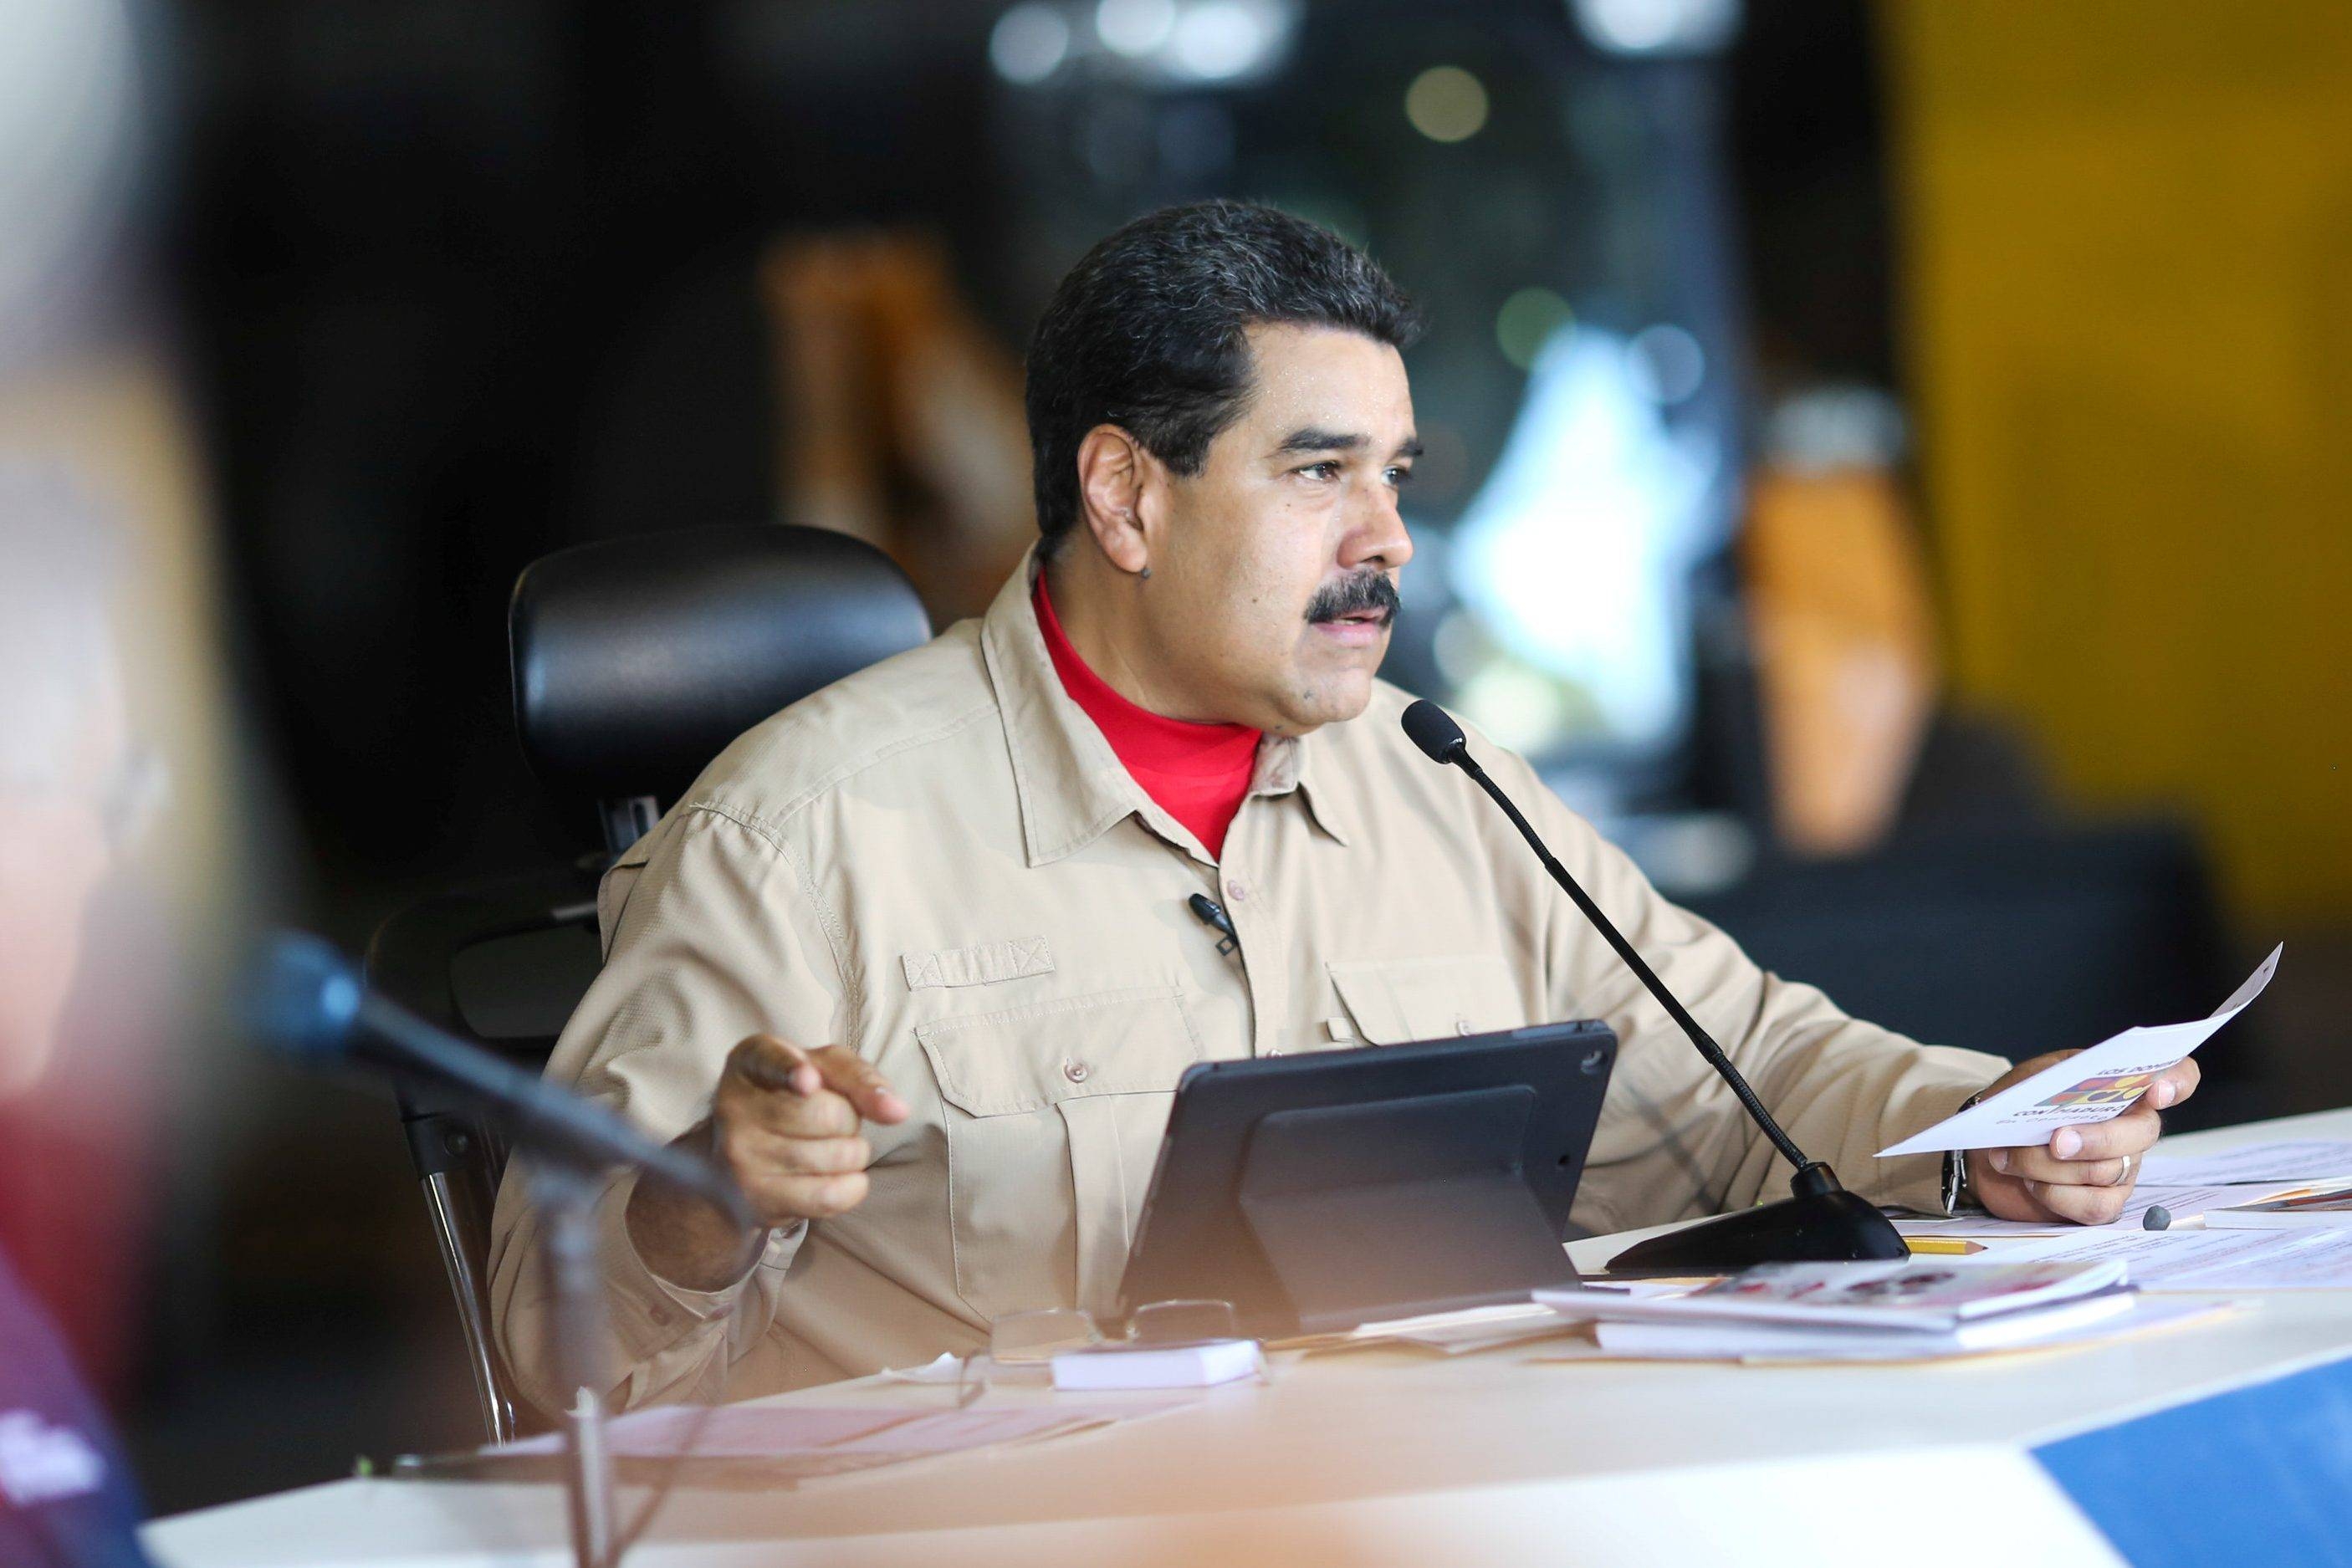 СМИ: Президент Венесуэлы прячет тонны золота в другой стране